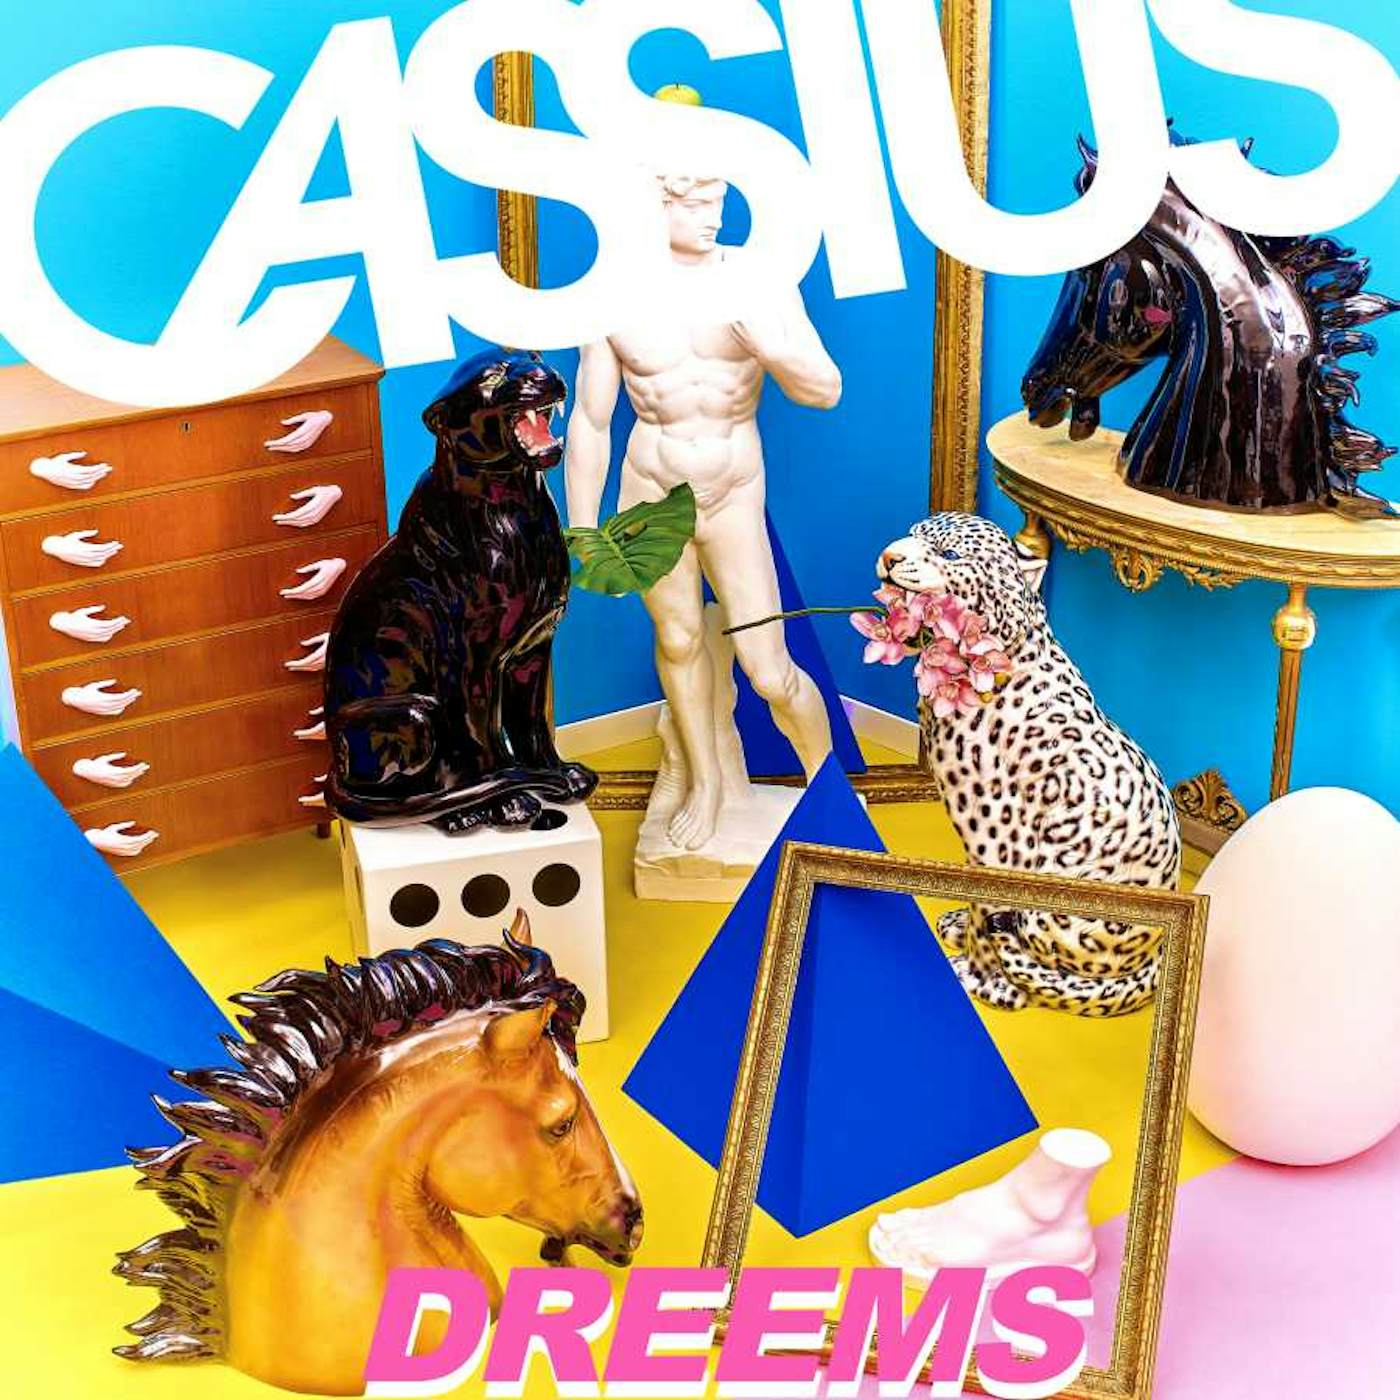 Cassius Dreems CD